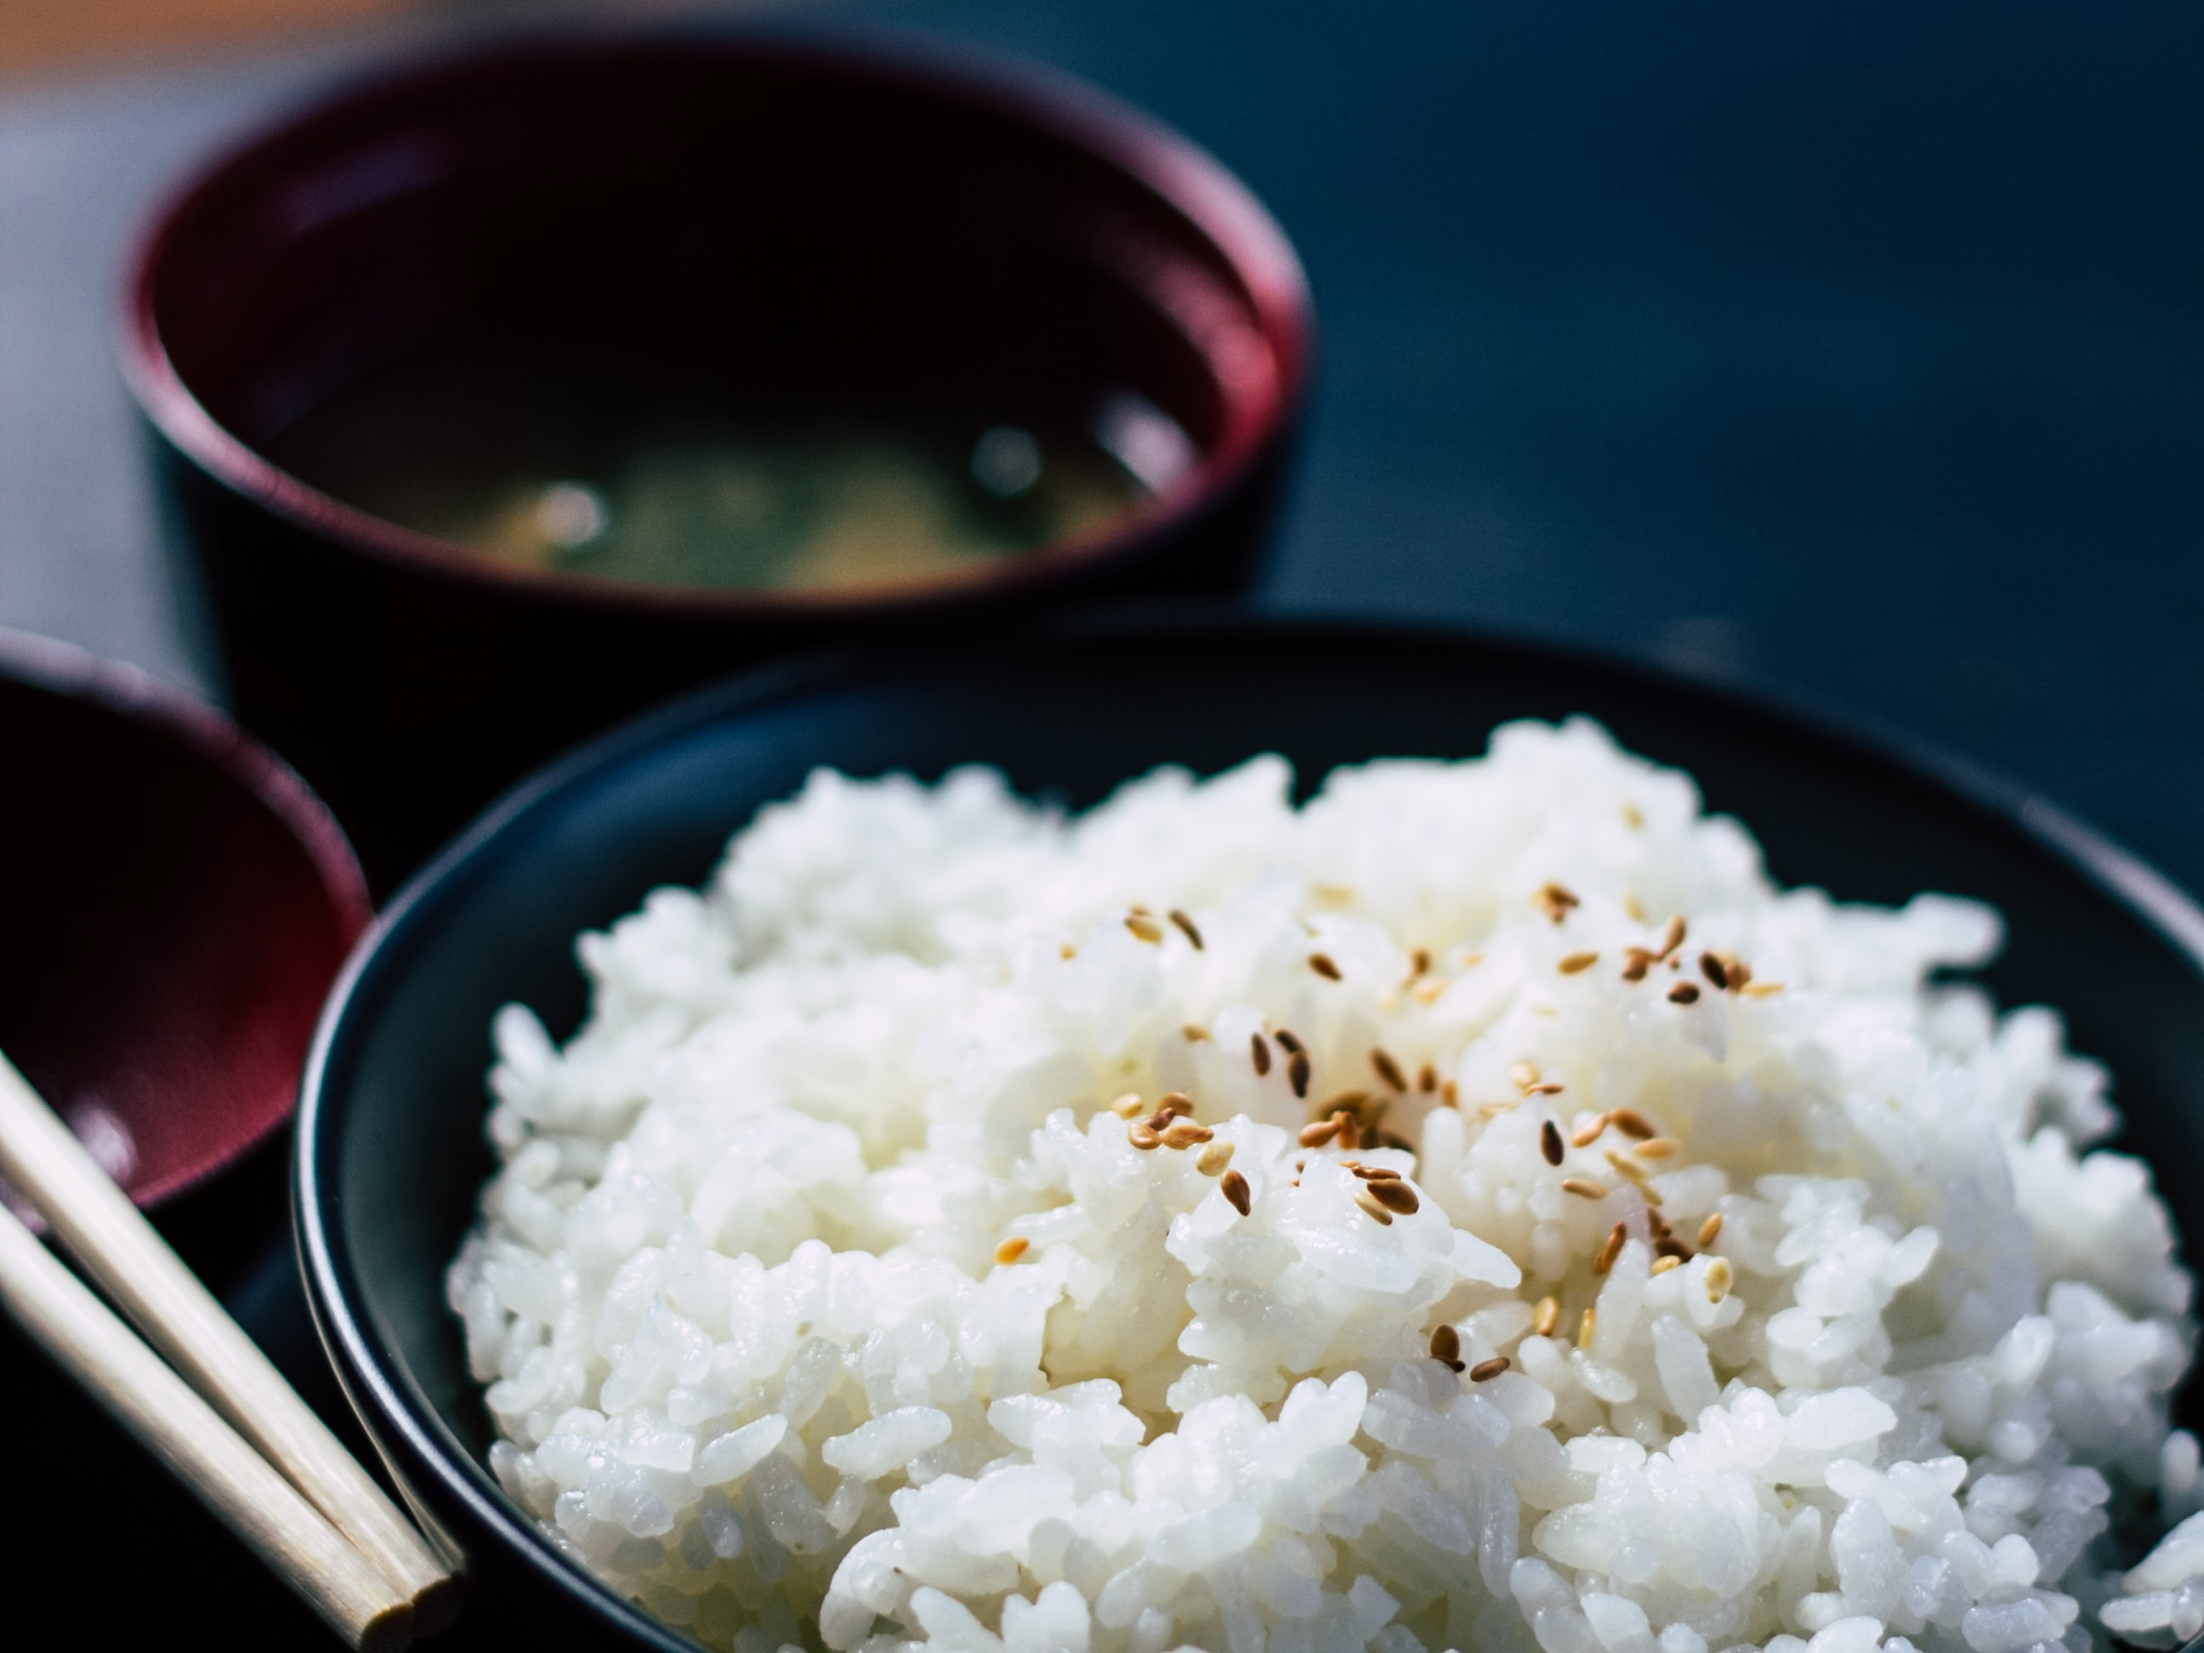 θεραπεία αδυνατίσματος με ρύζι